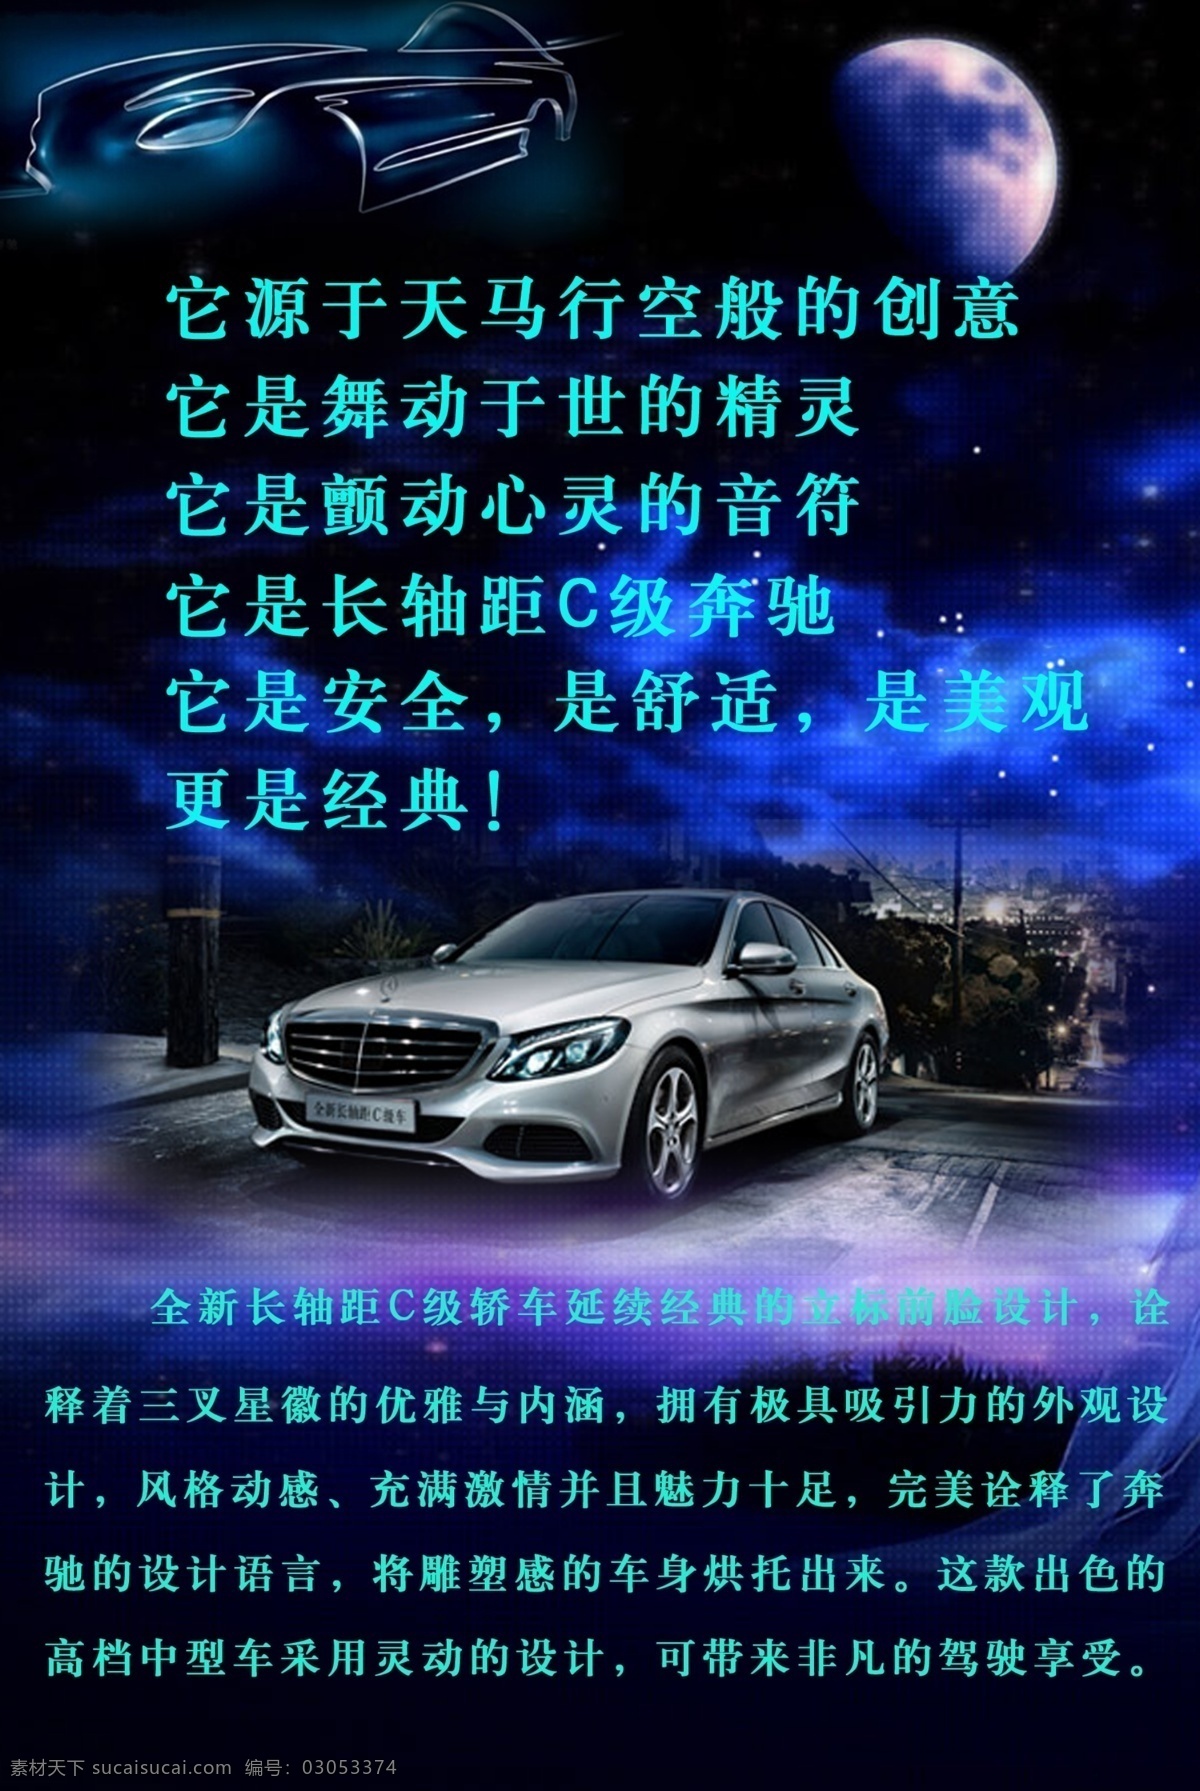 奔驰 新车 发布 画板 喷绘 汽车元素 夜光背景 psd源文件